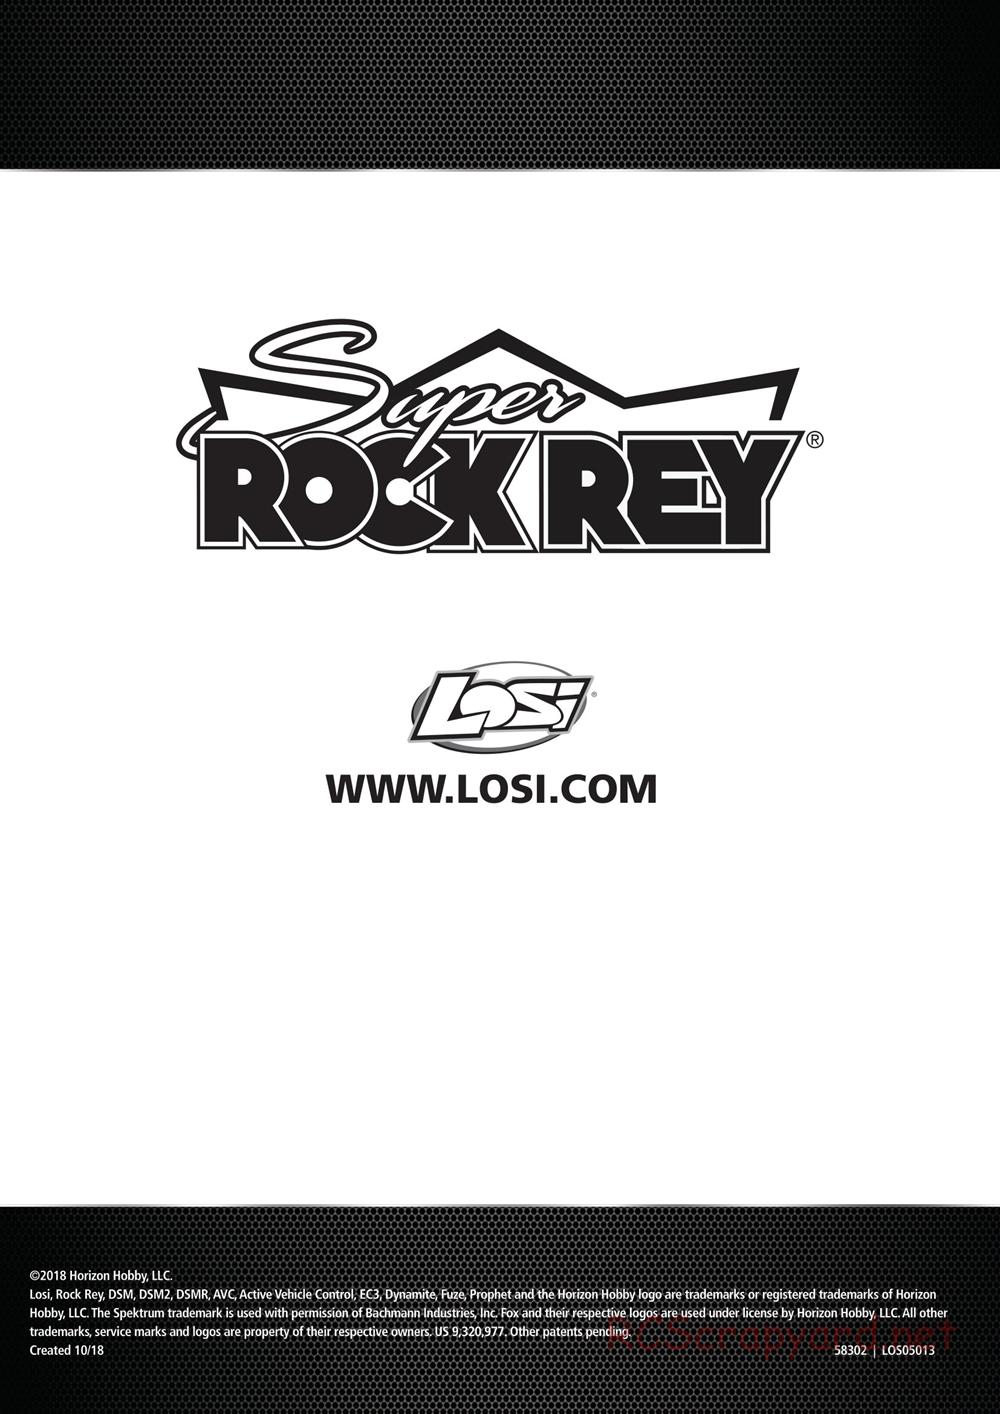 Team Losi - Super Rock Rey - Manual - Page 22